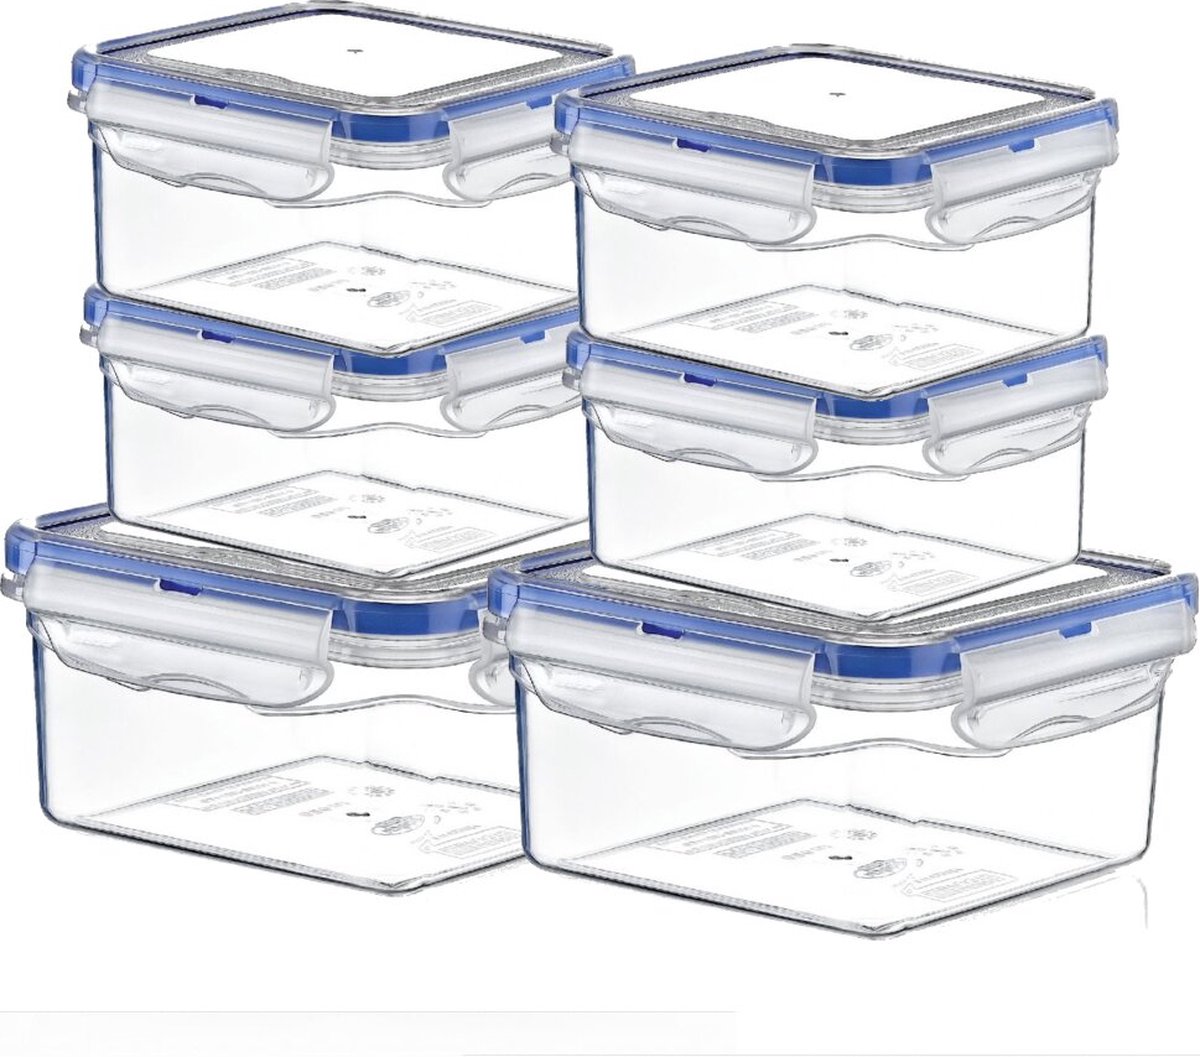 TronicXL 6 stuks vershouddoos - voorraaddozen met deksel - bulkdozen - bewaardoos set met kliksluiting luchtdicht opbergdoos box container keukenvaatwasser bestendig